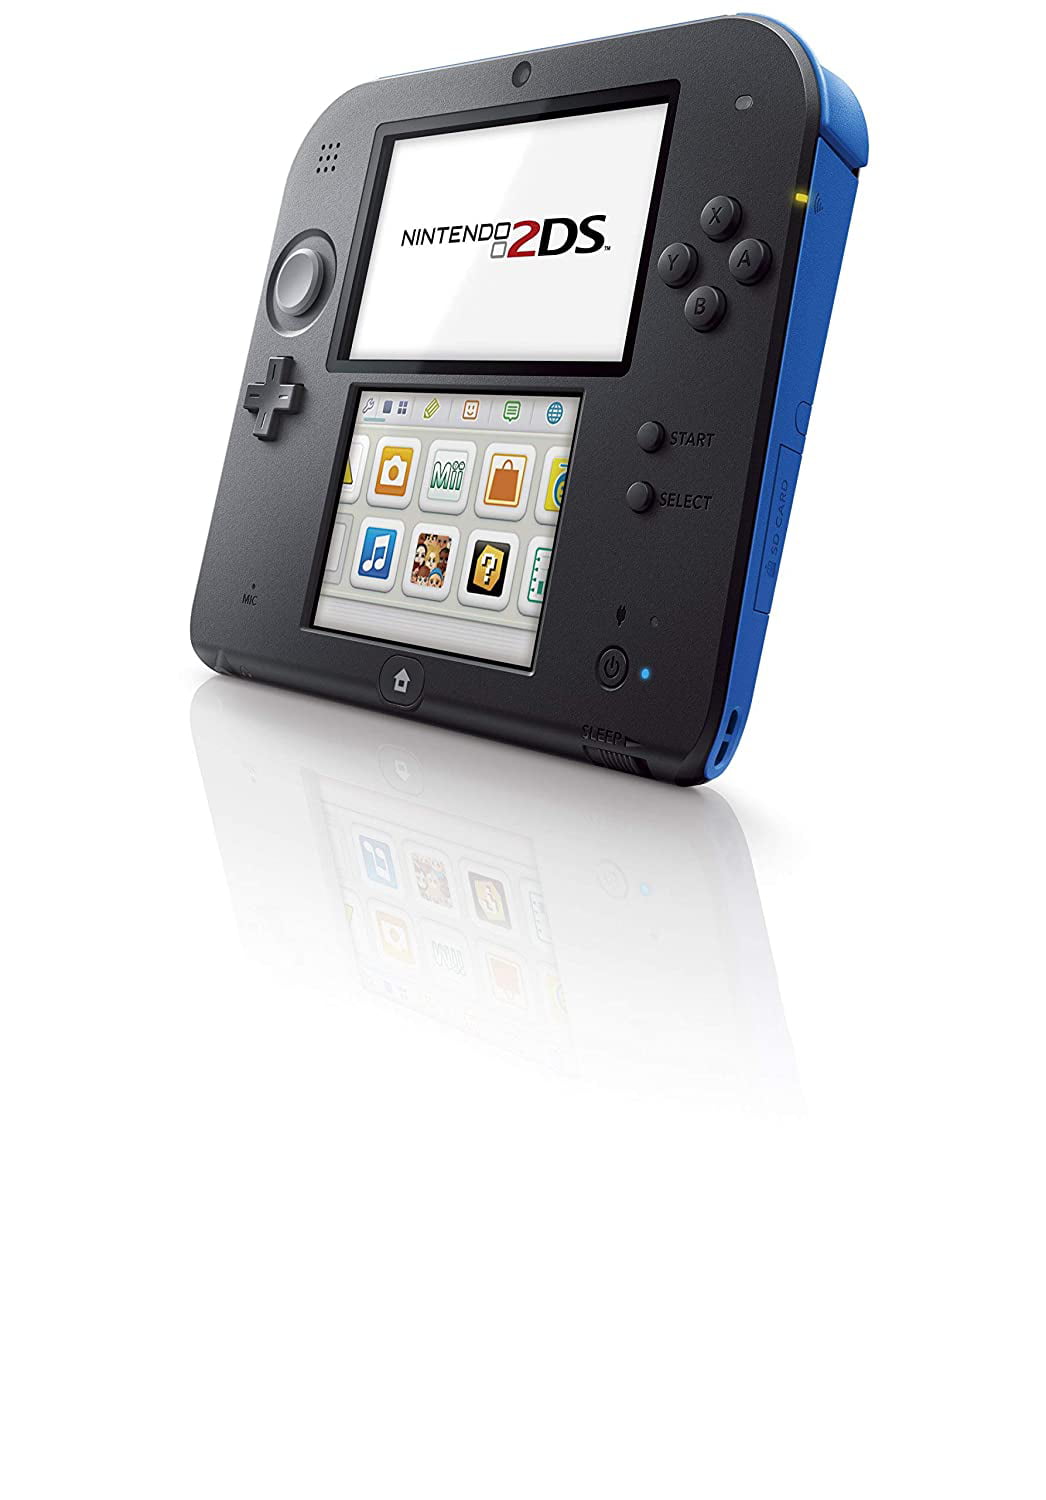 Restored - Nintendo 2DS - Electric Blue/black (Refurbished)